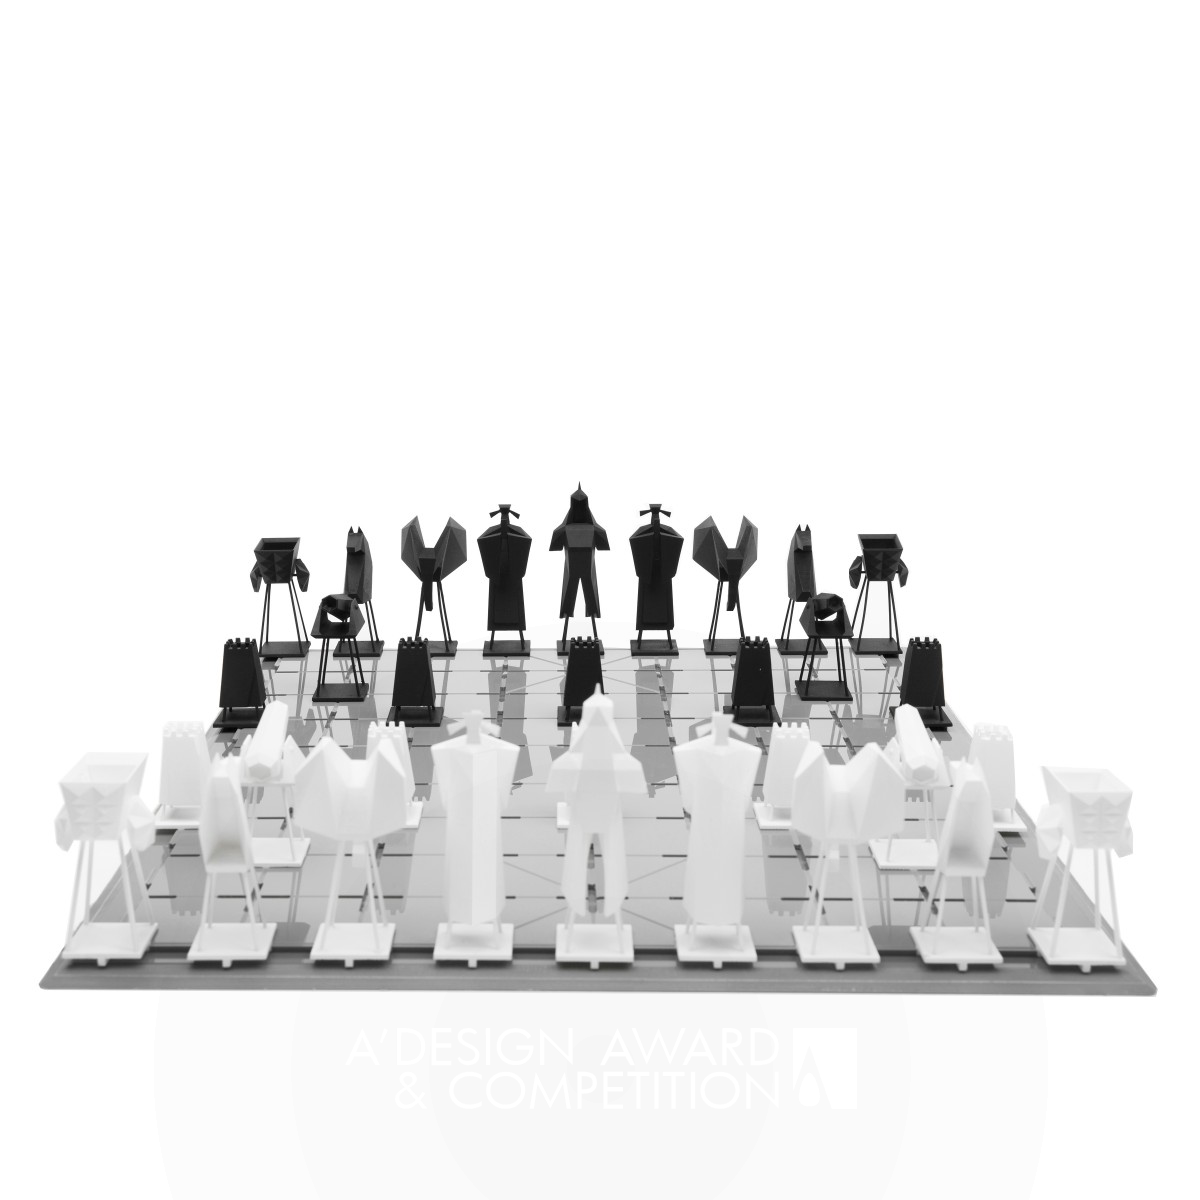 CHESS DRAMA Three-dimensional Chinese chess